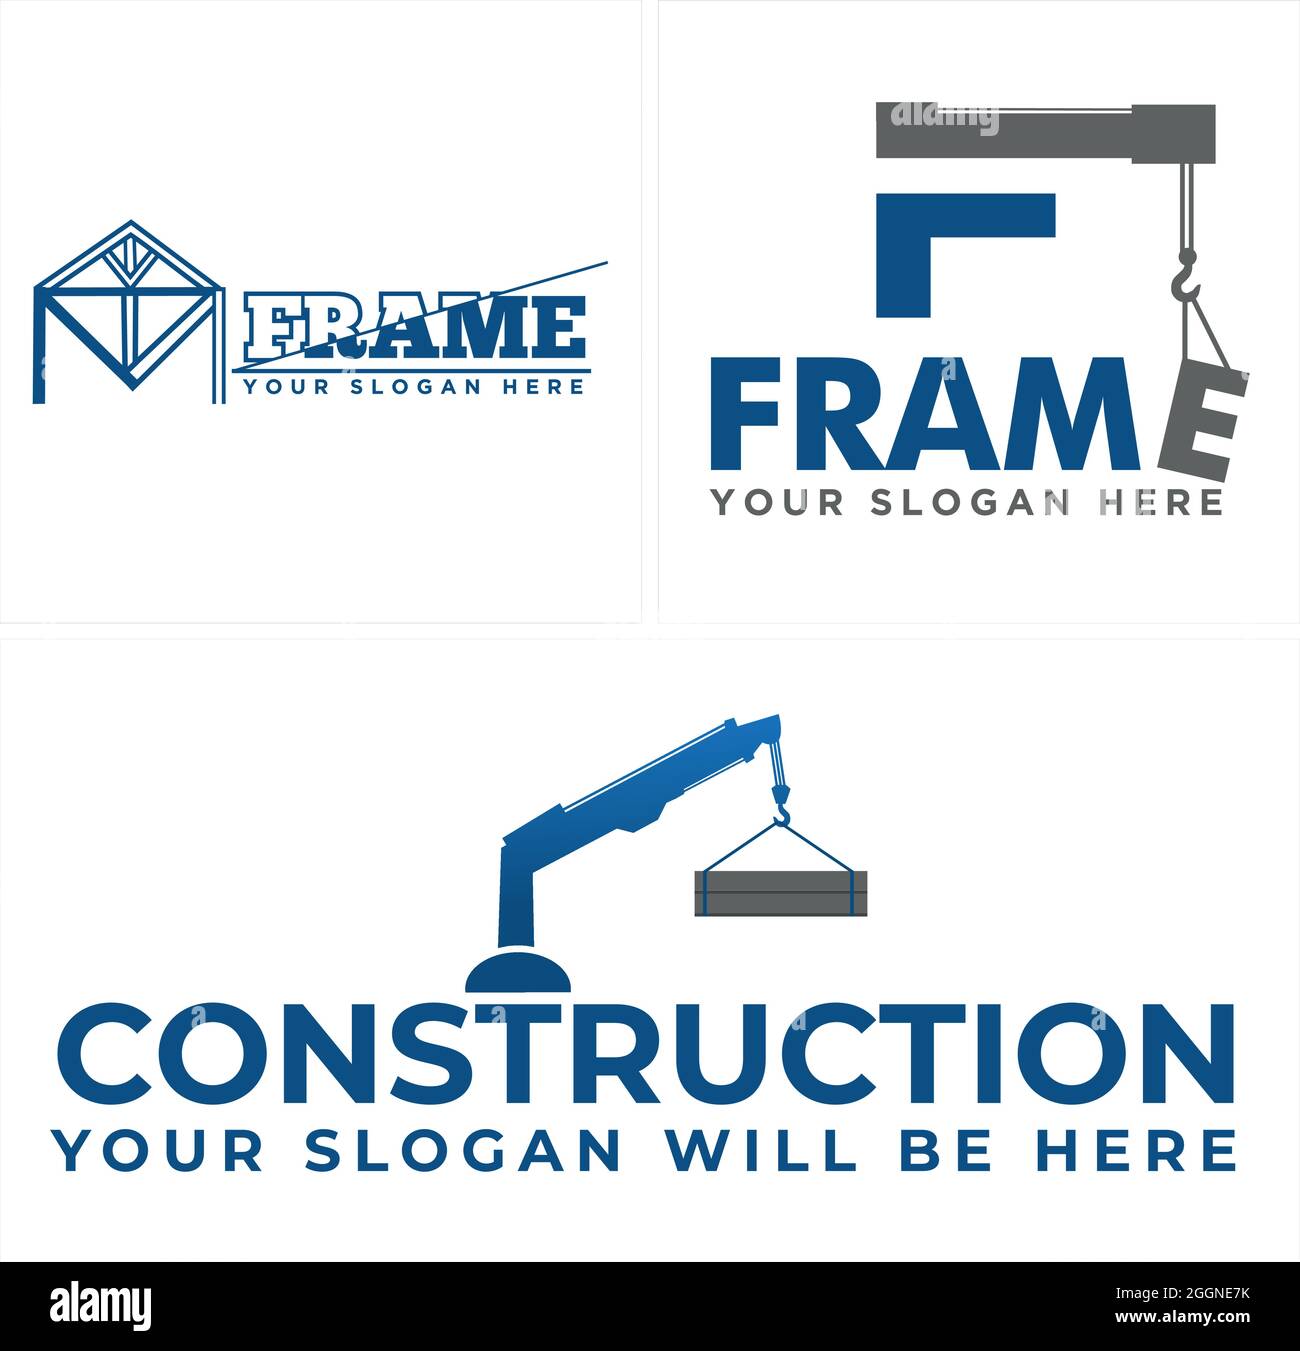 Construction building with icon crane logo design Stock Vector